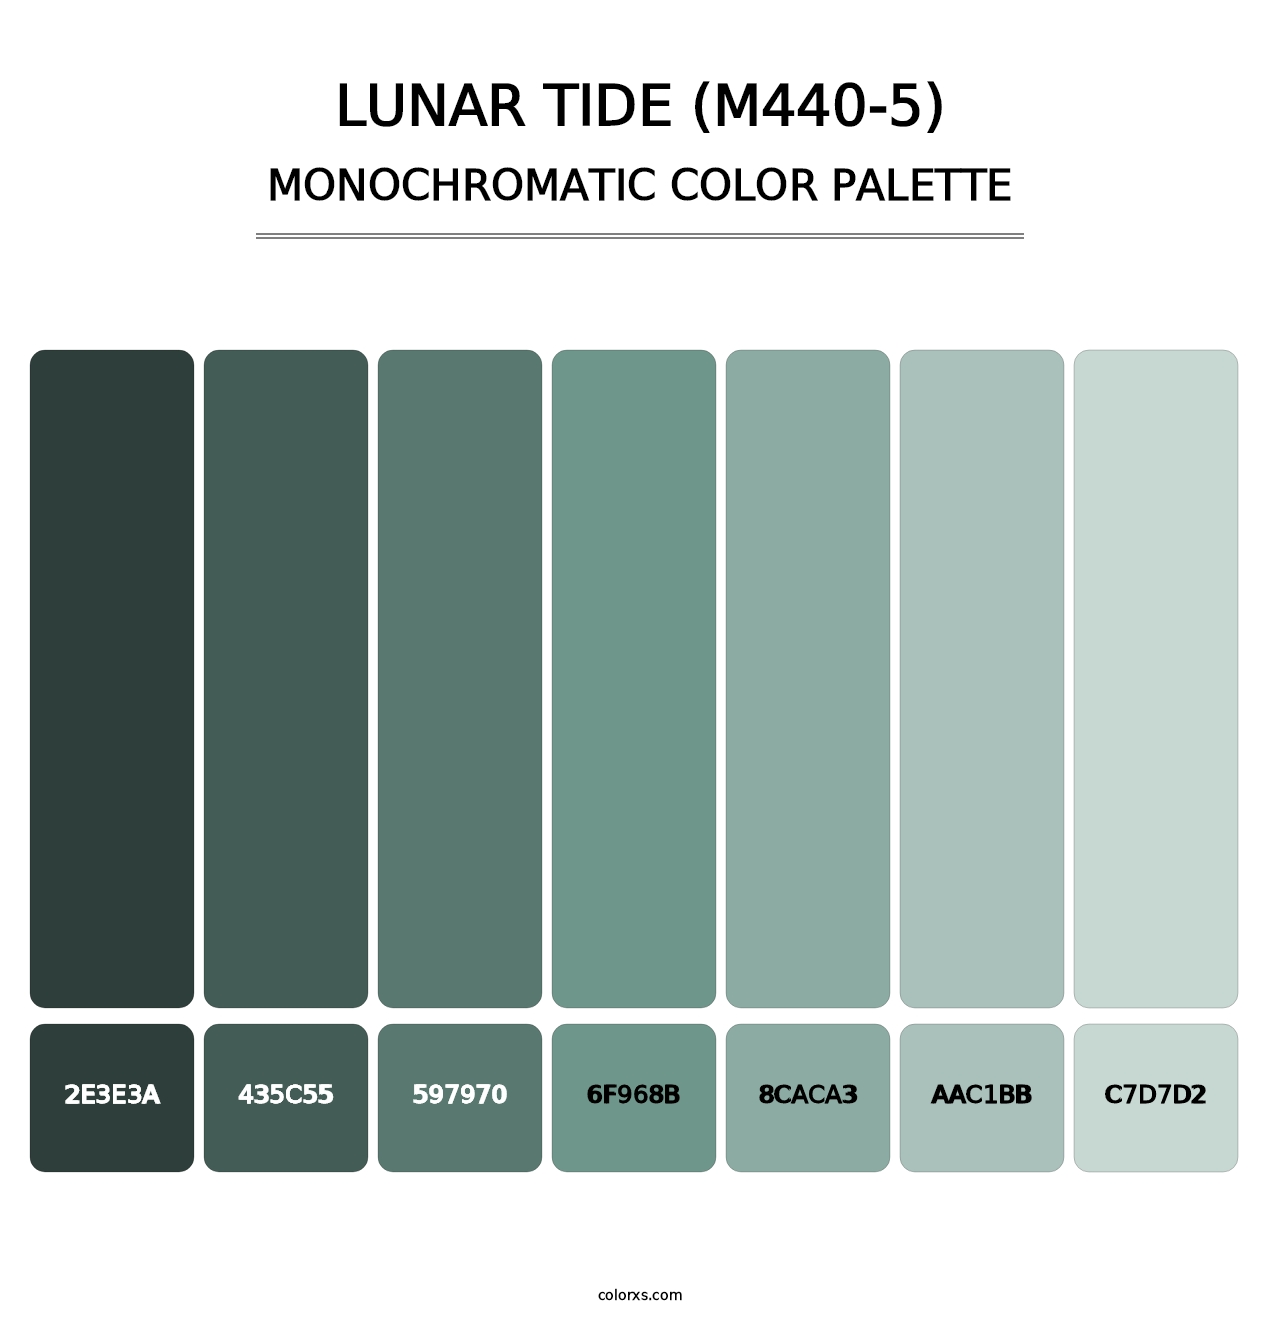 Lunar Tide (M440-5) - Monochromatic Color Palette